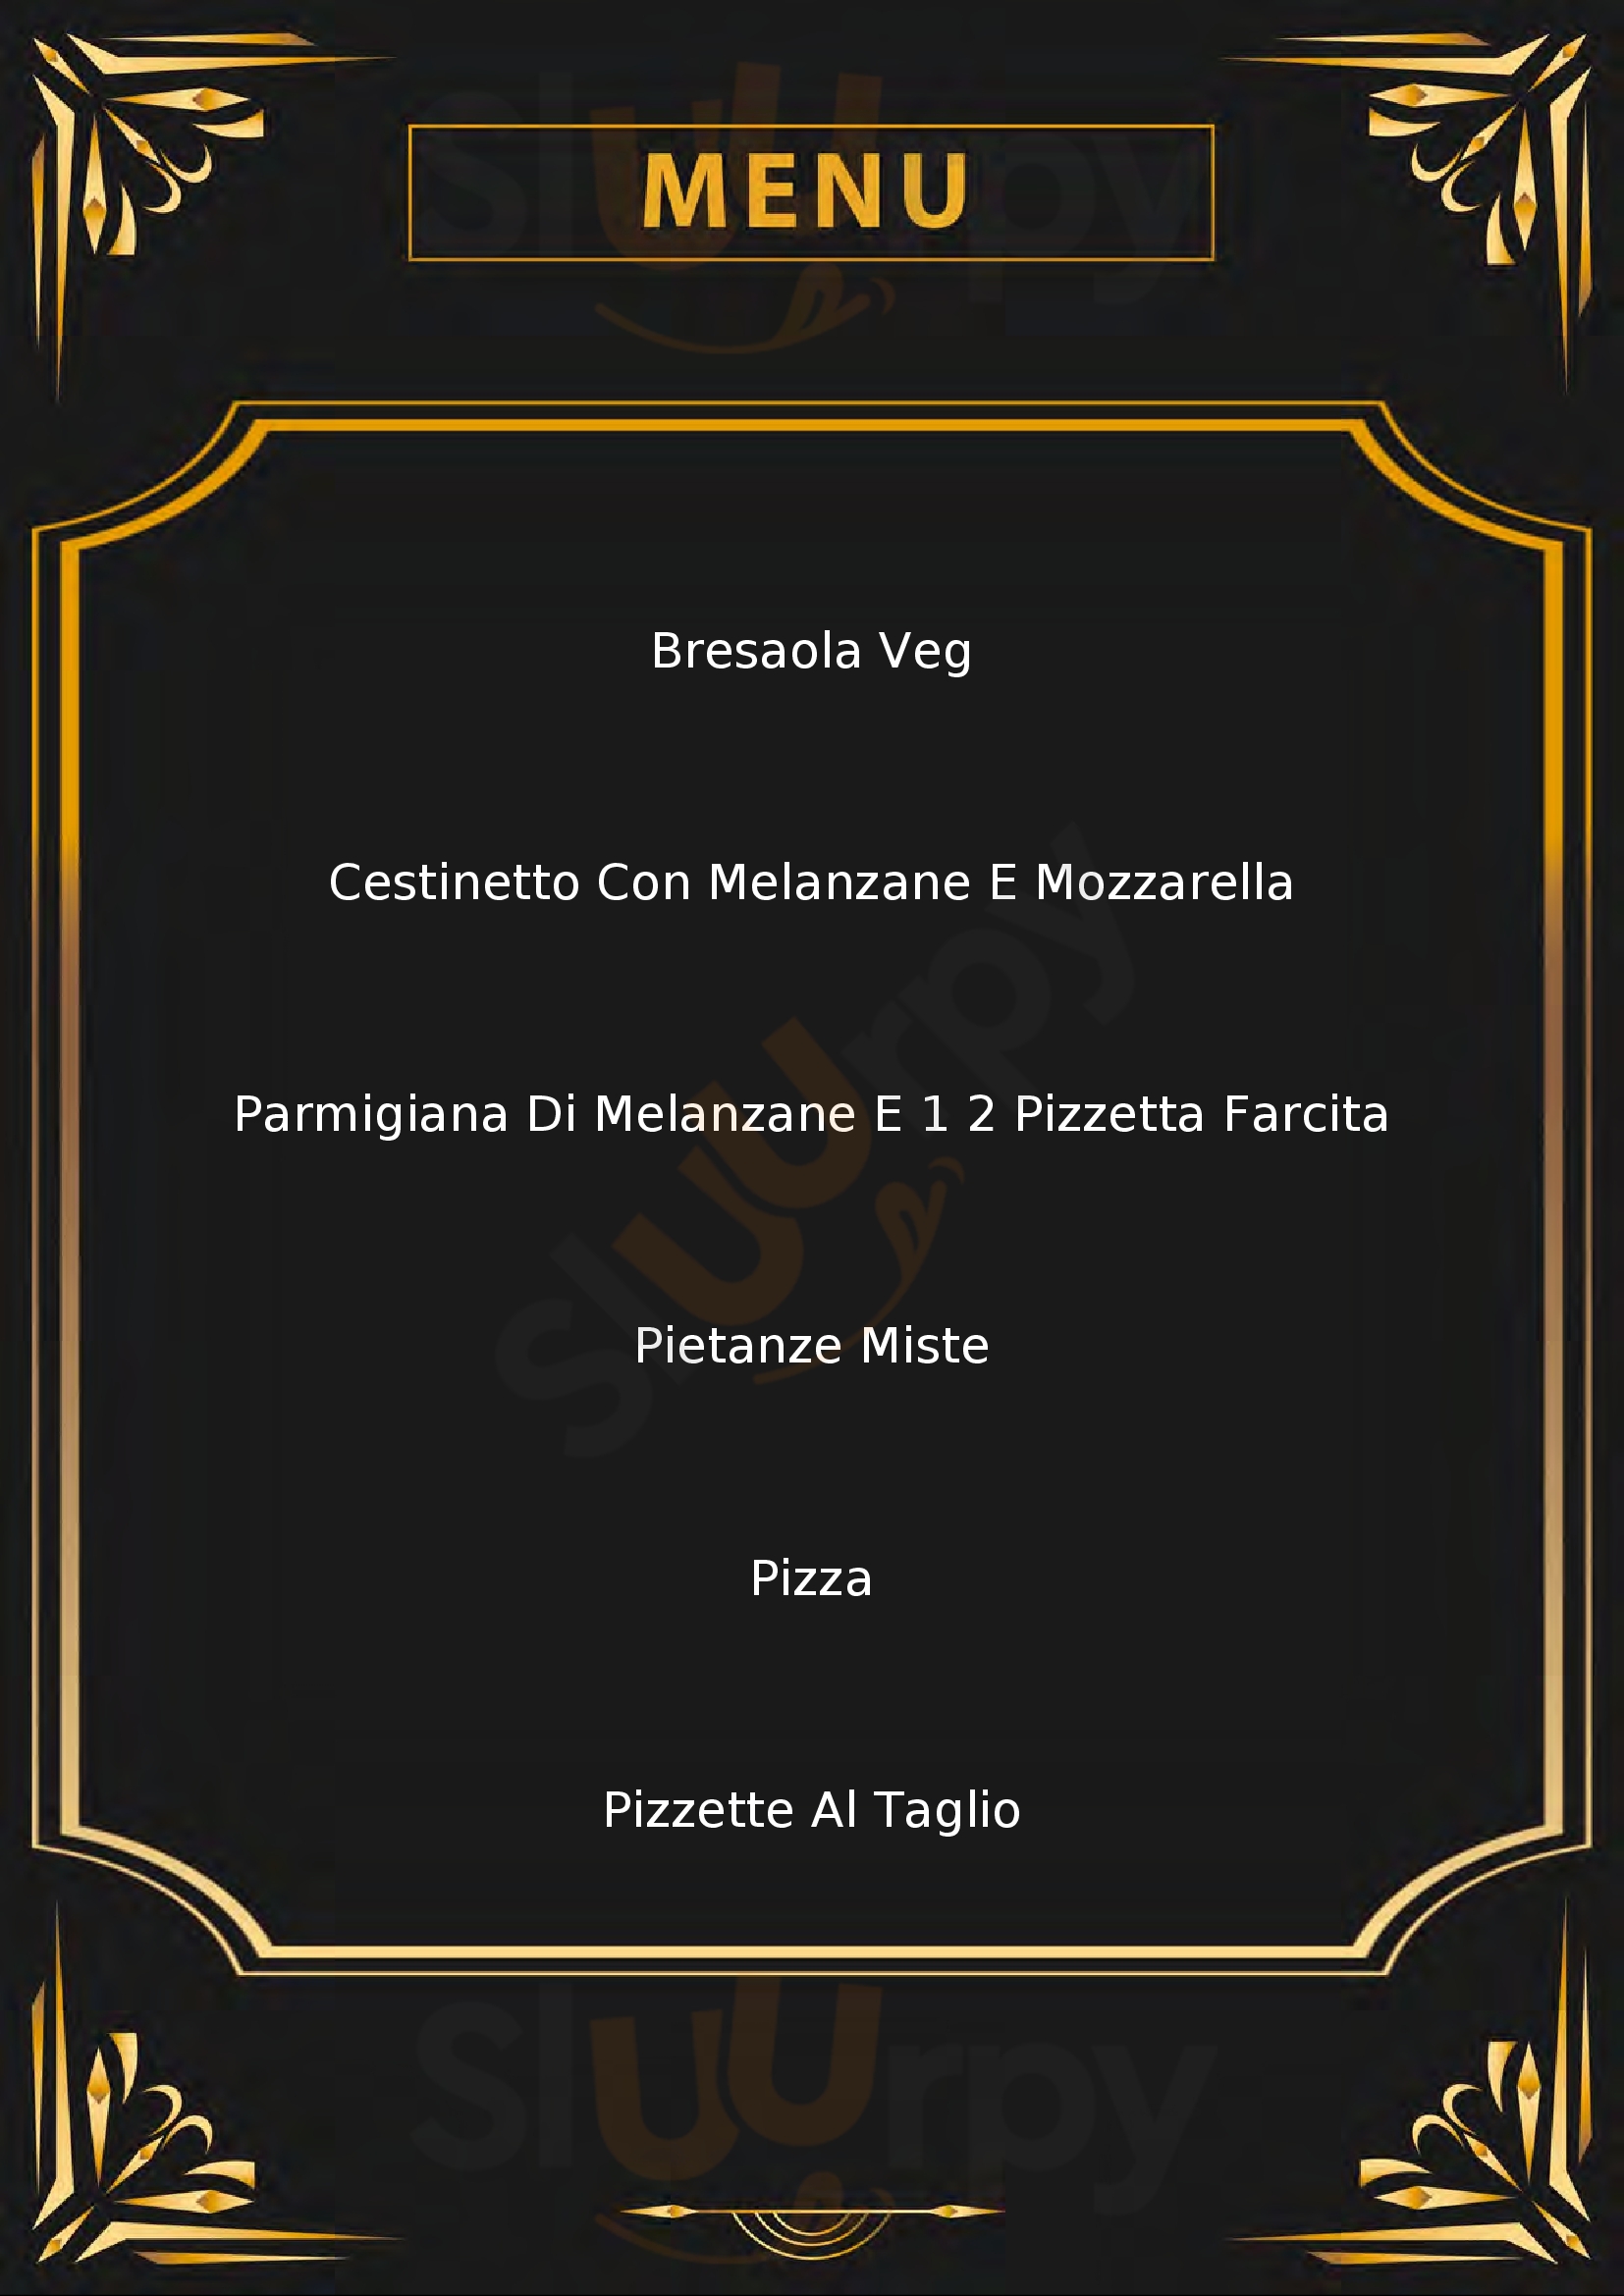 Scialla Pizzeria Cagliari menù 1 pagina